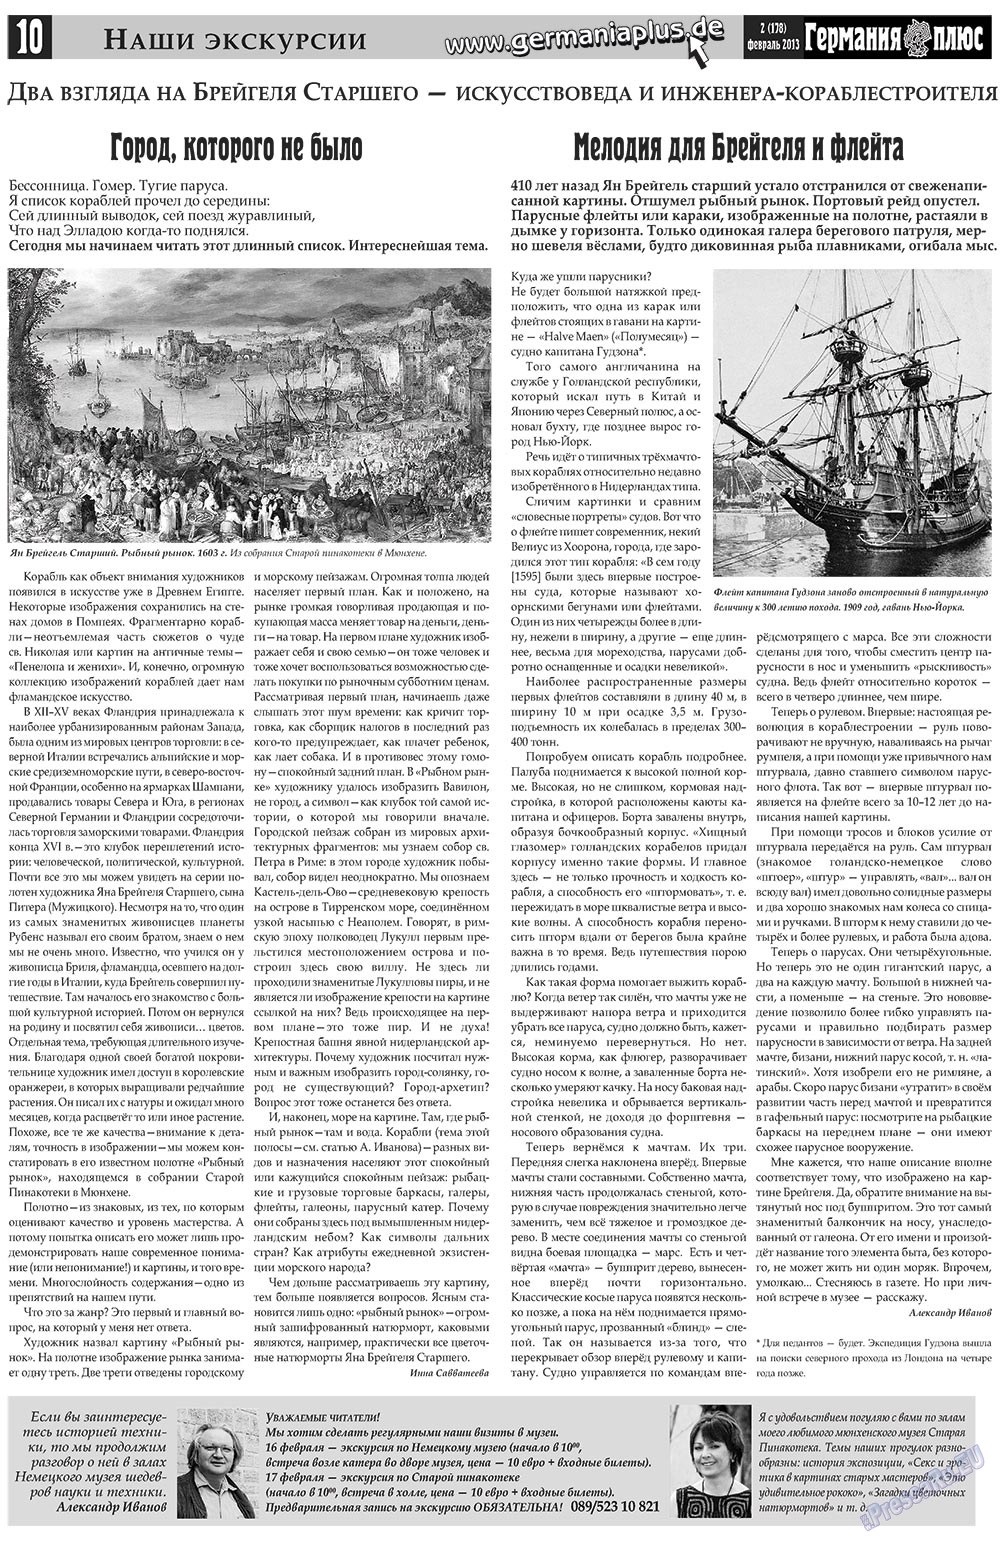 Германия плюс (газета). 2013 год, номер 2, стр. 10